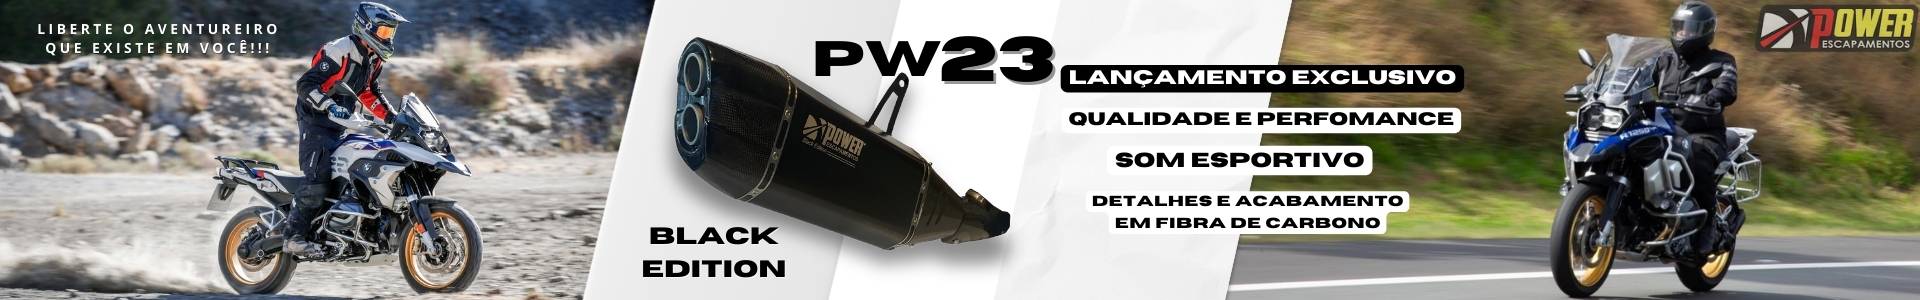 GS PW23